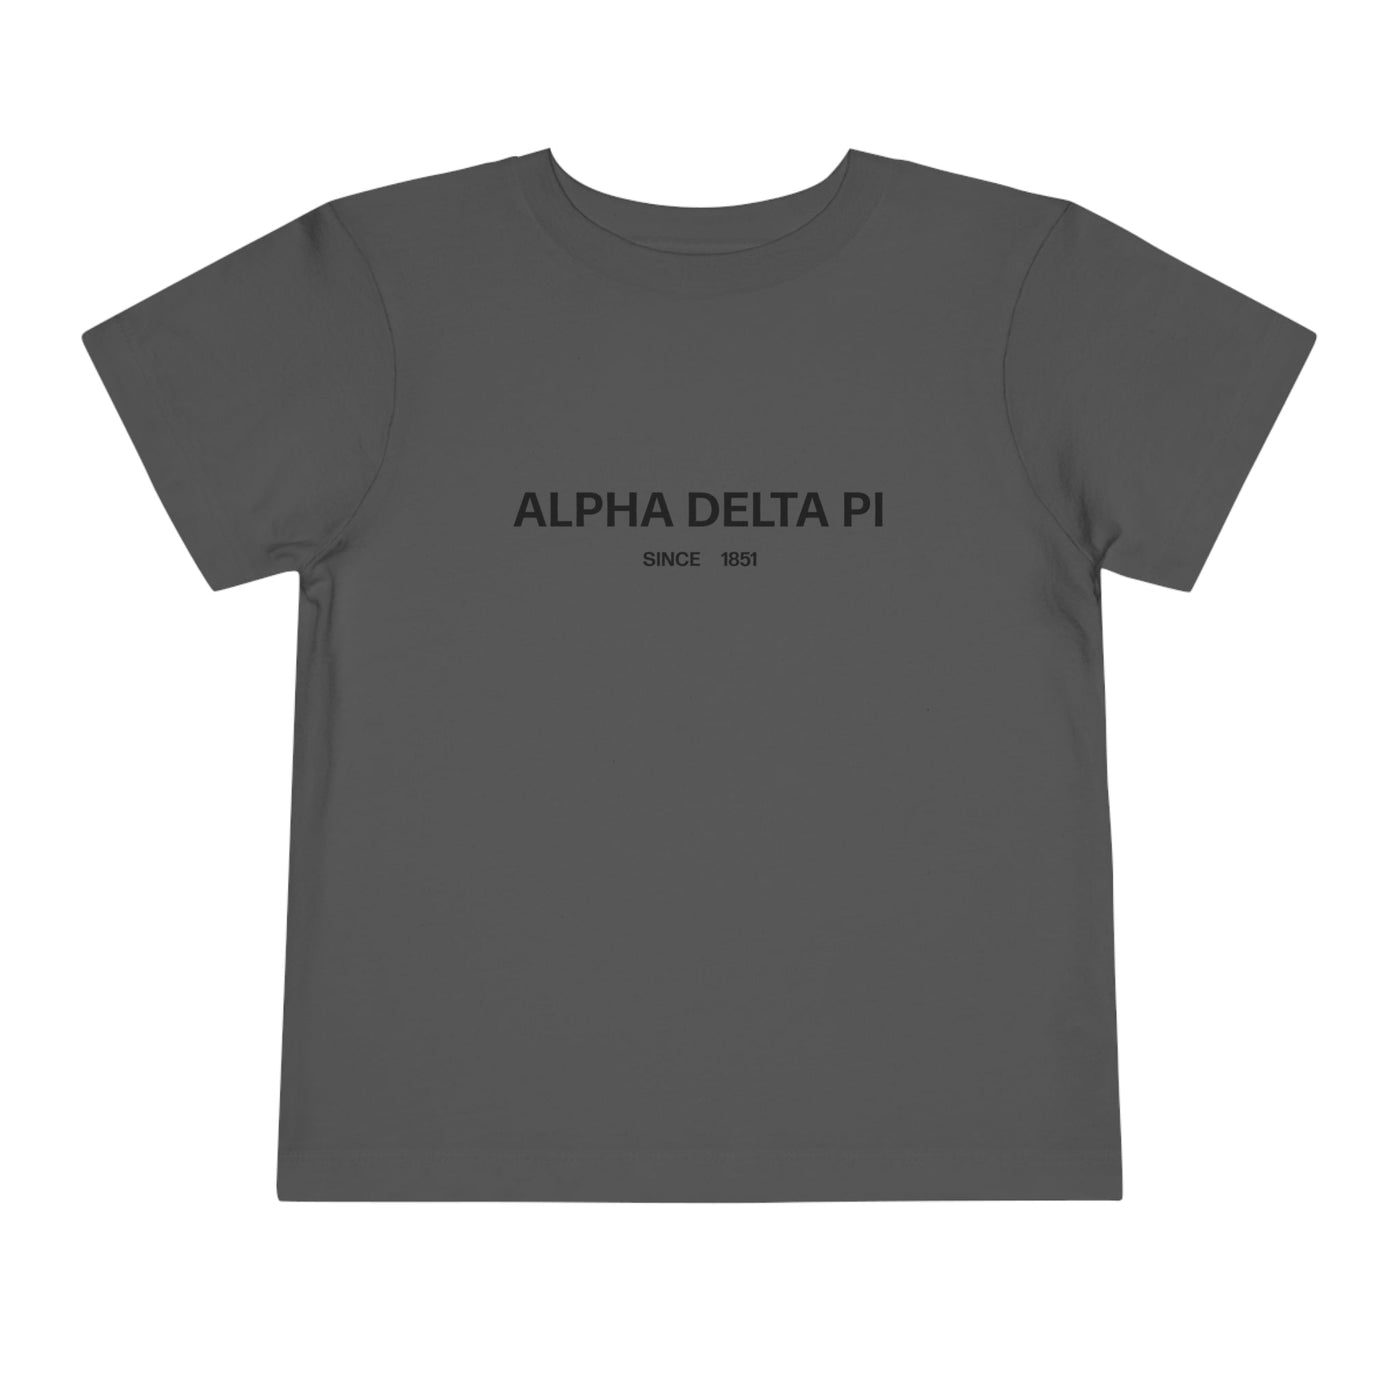 Alpha Delta Pi Sorority Baby Tee Crop Top